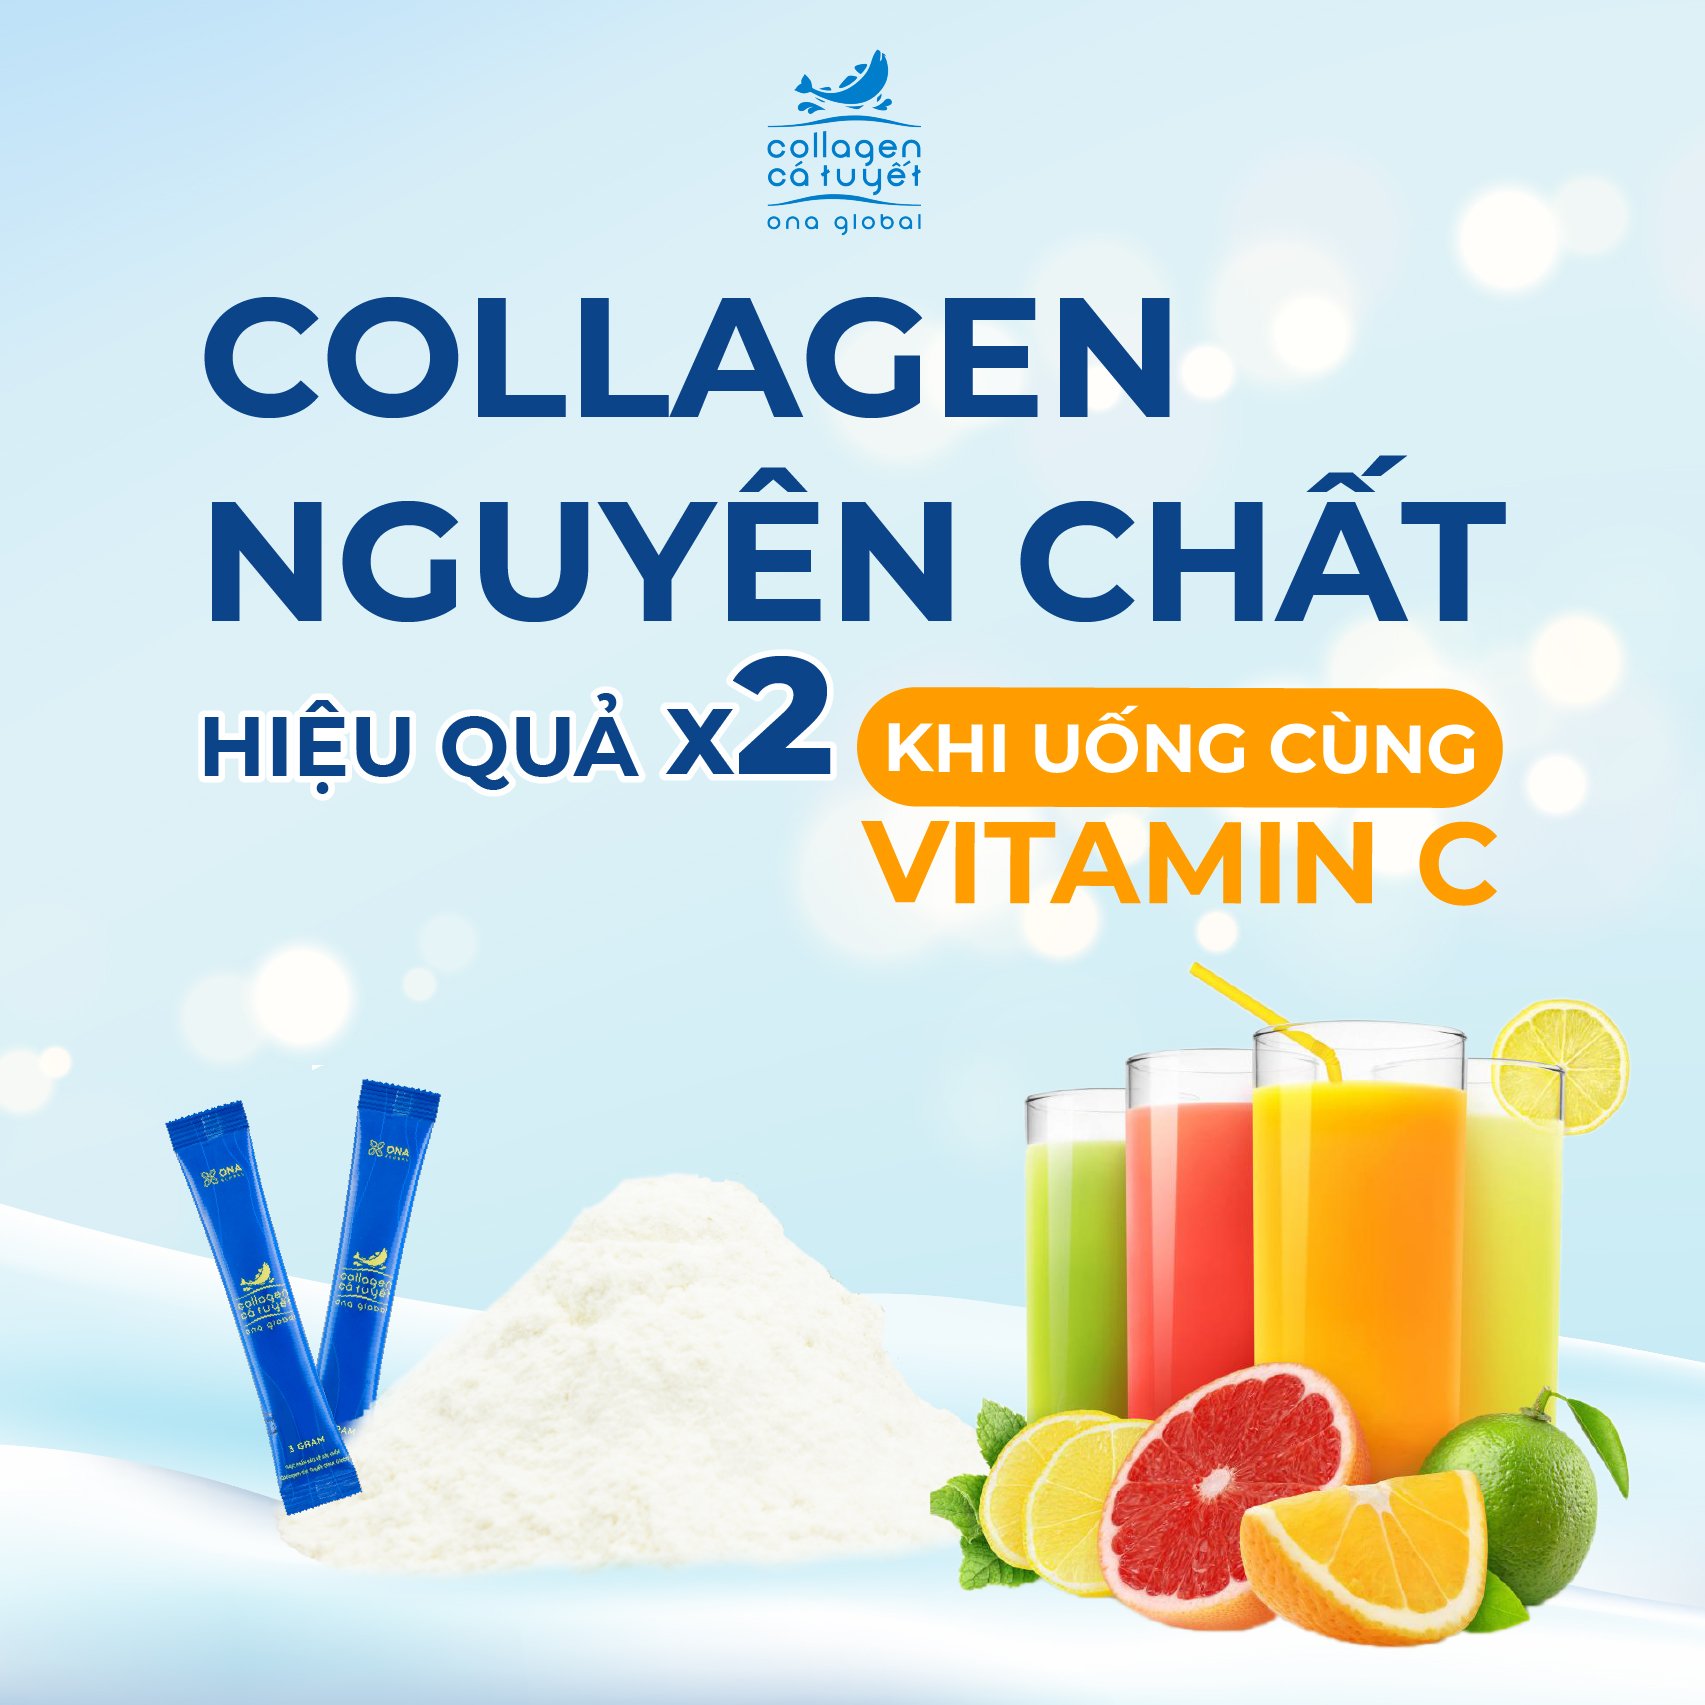 Tại sao Collagen nên uống cùng vitamin C?